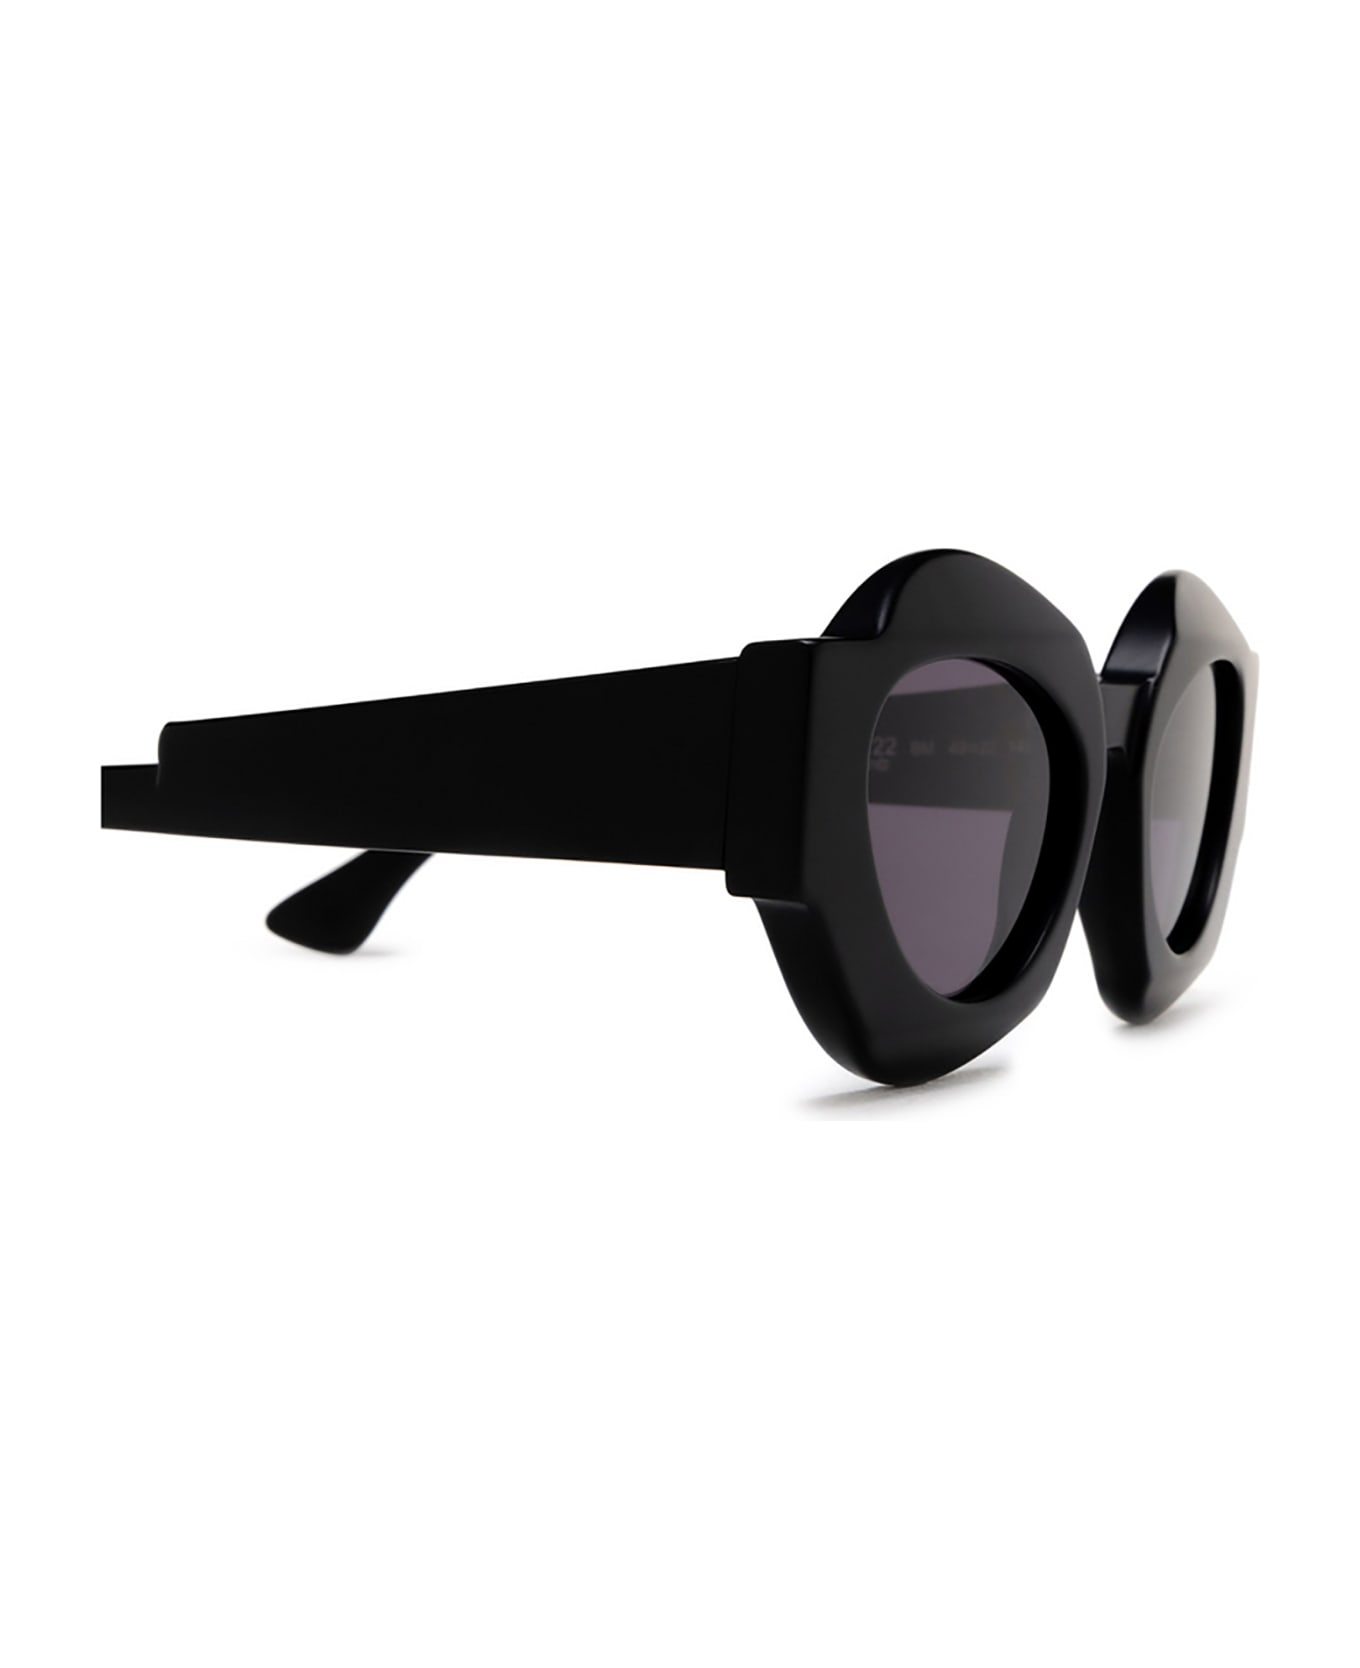 Kuboraum X22 Sunglasses - Bm サングラス